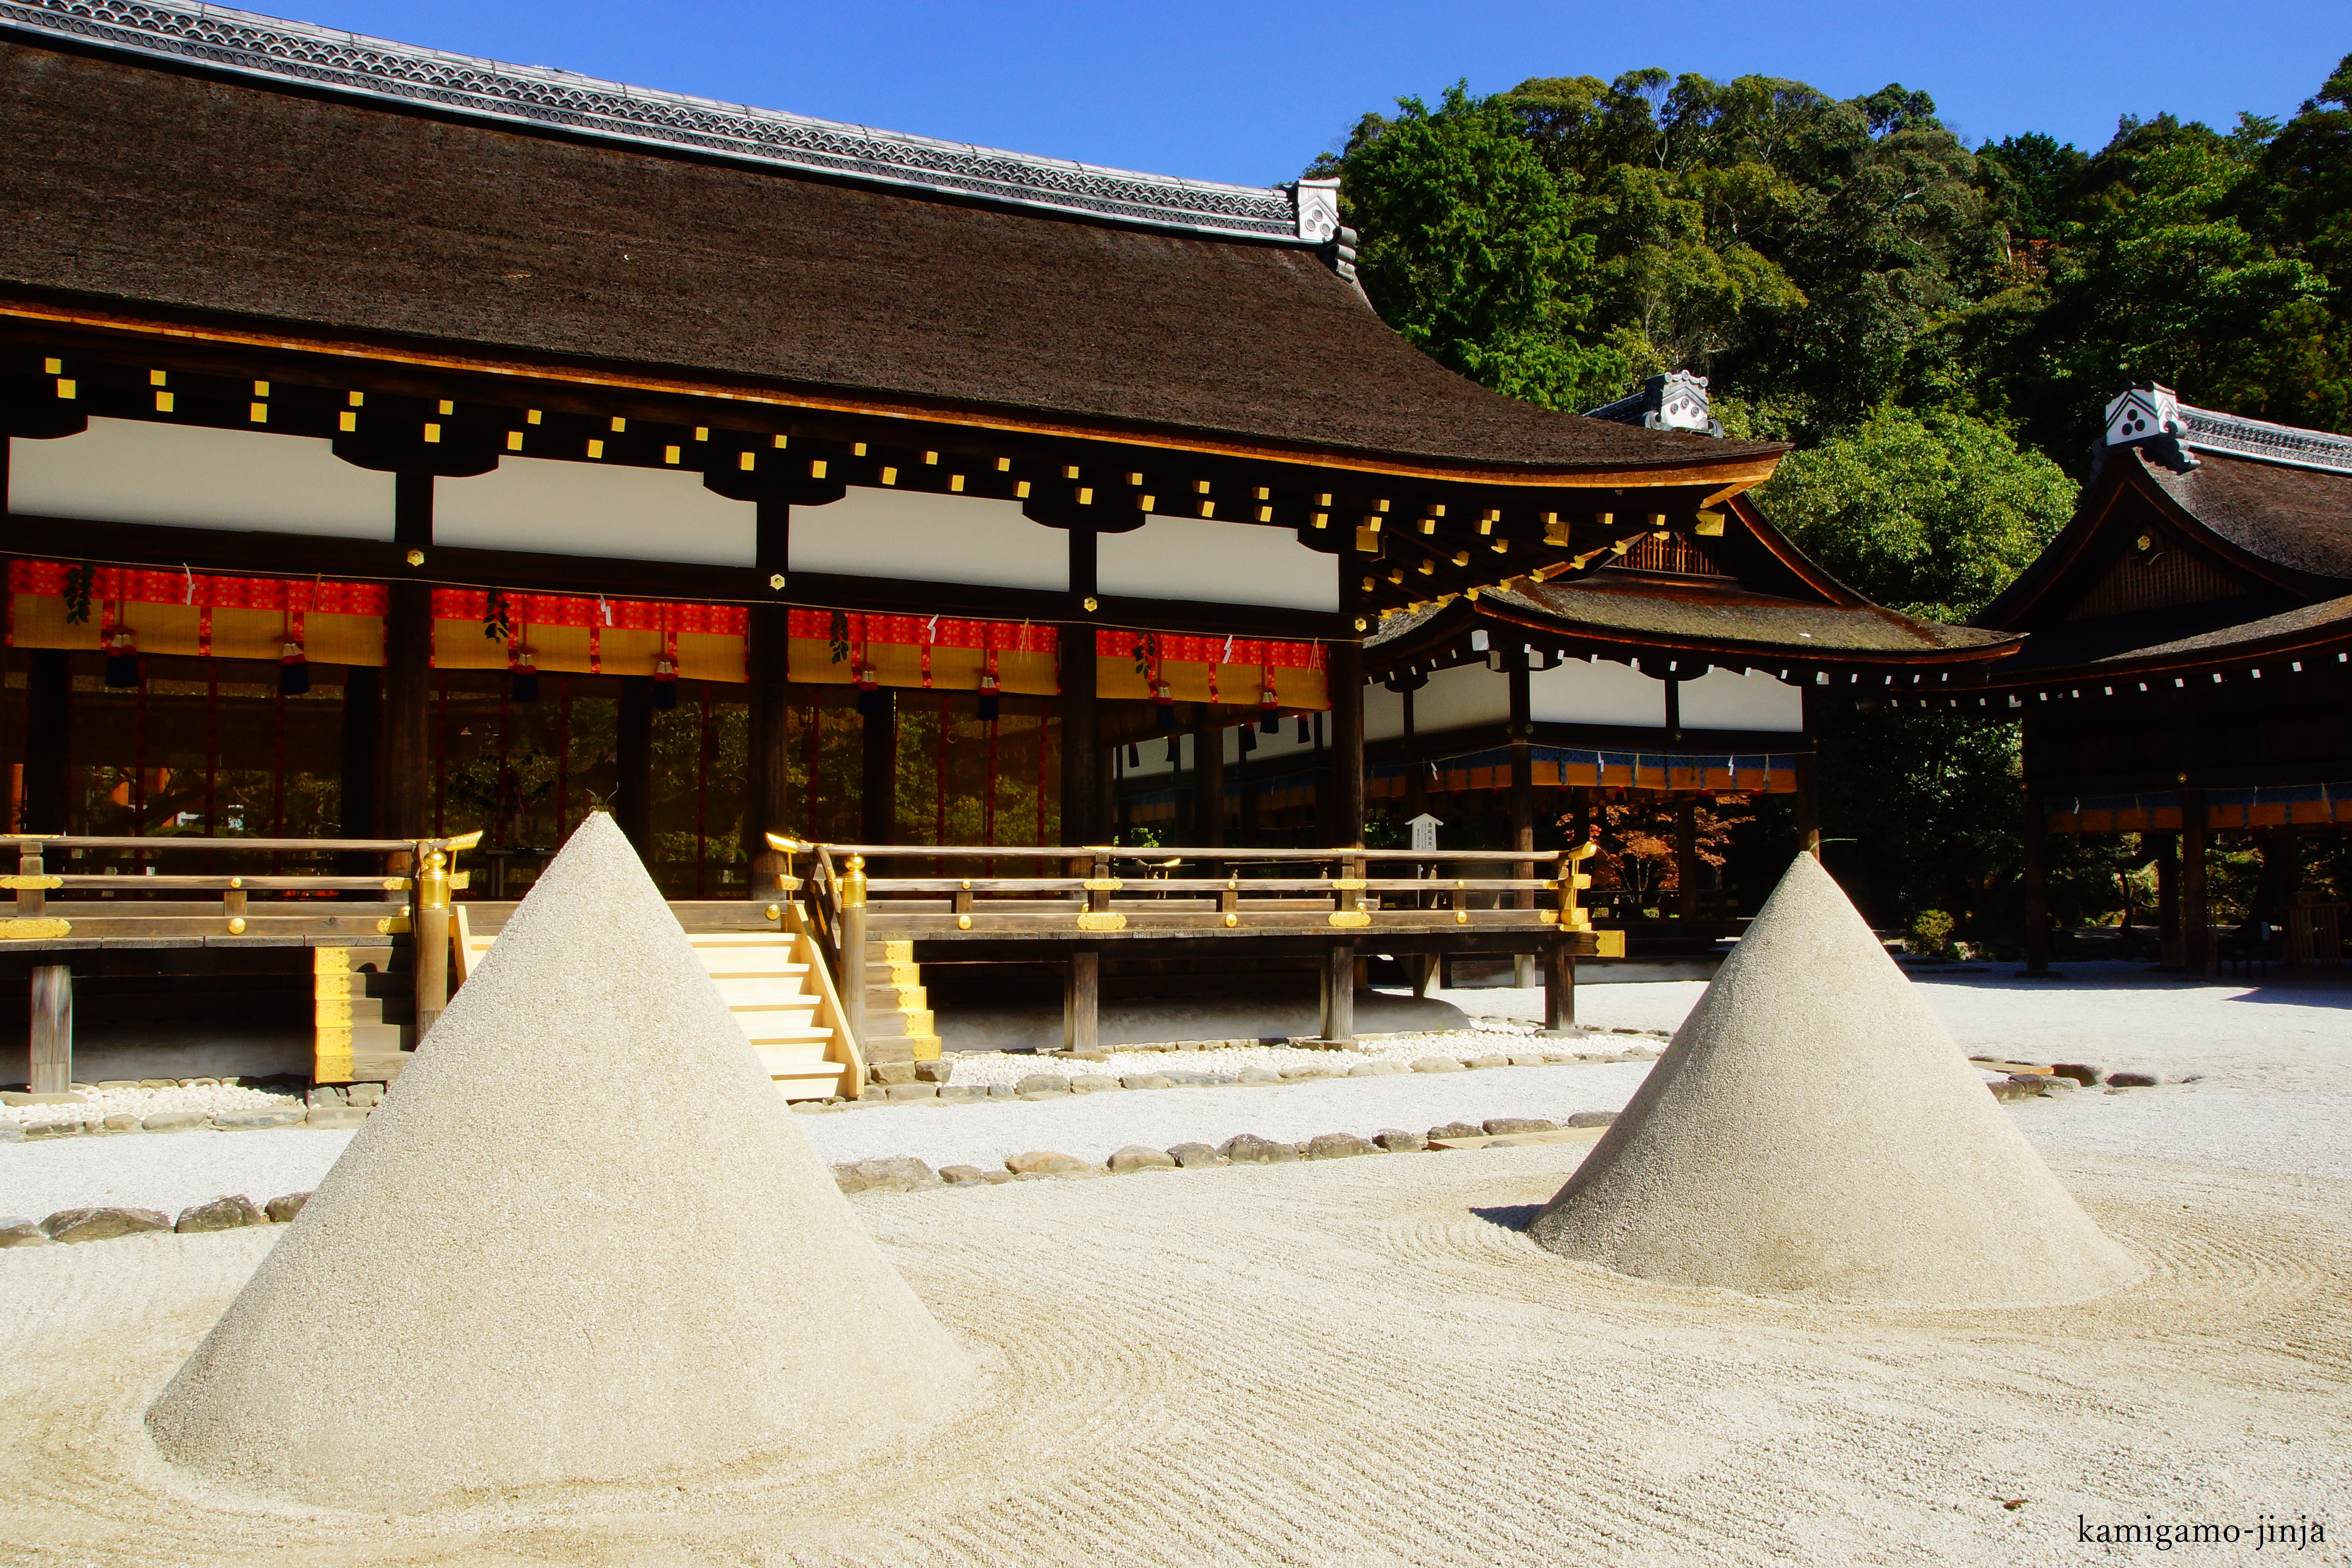 Kamigamo-jinja Shrine (Kamo Wakeikazuchi-jinja Shrine)'s image 1